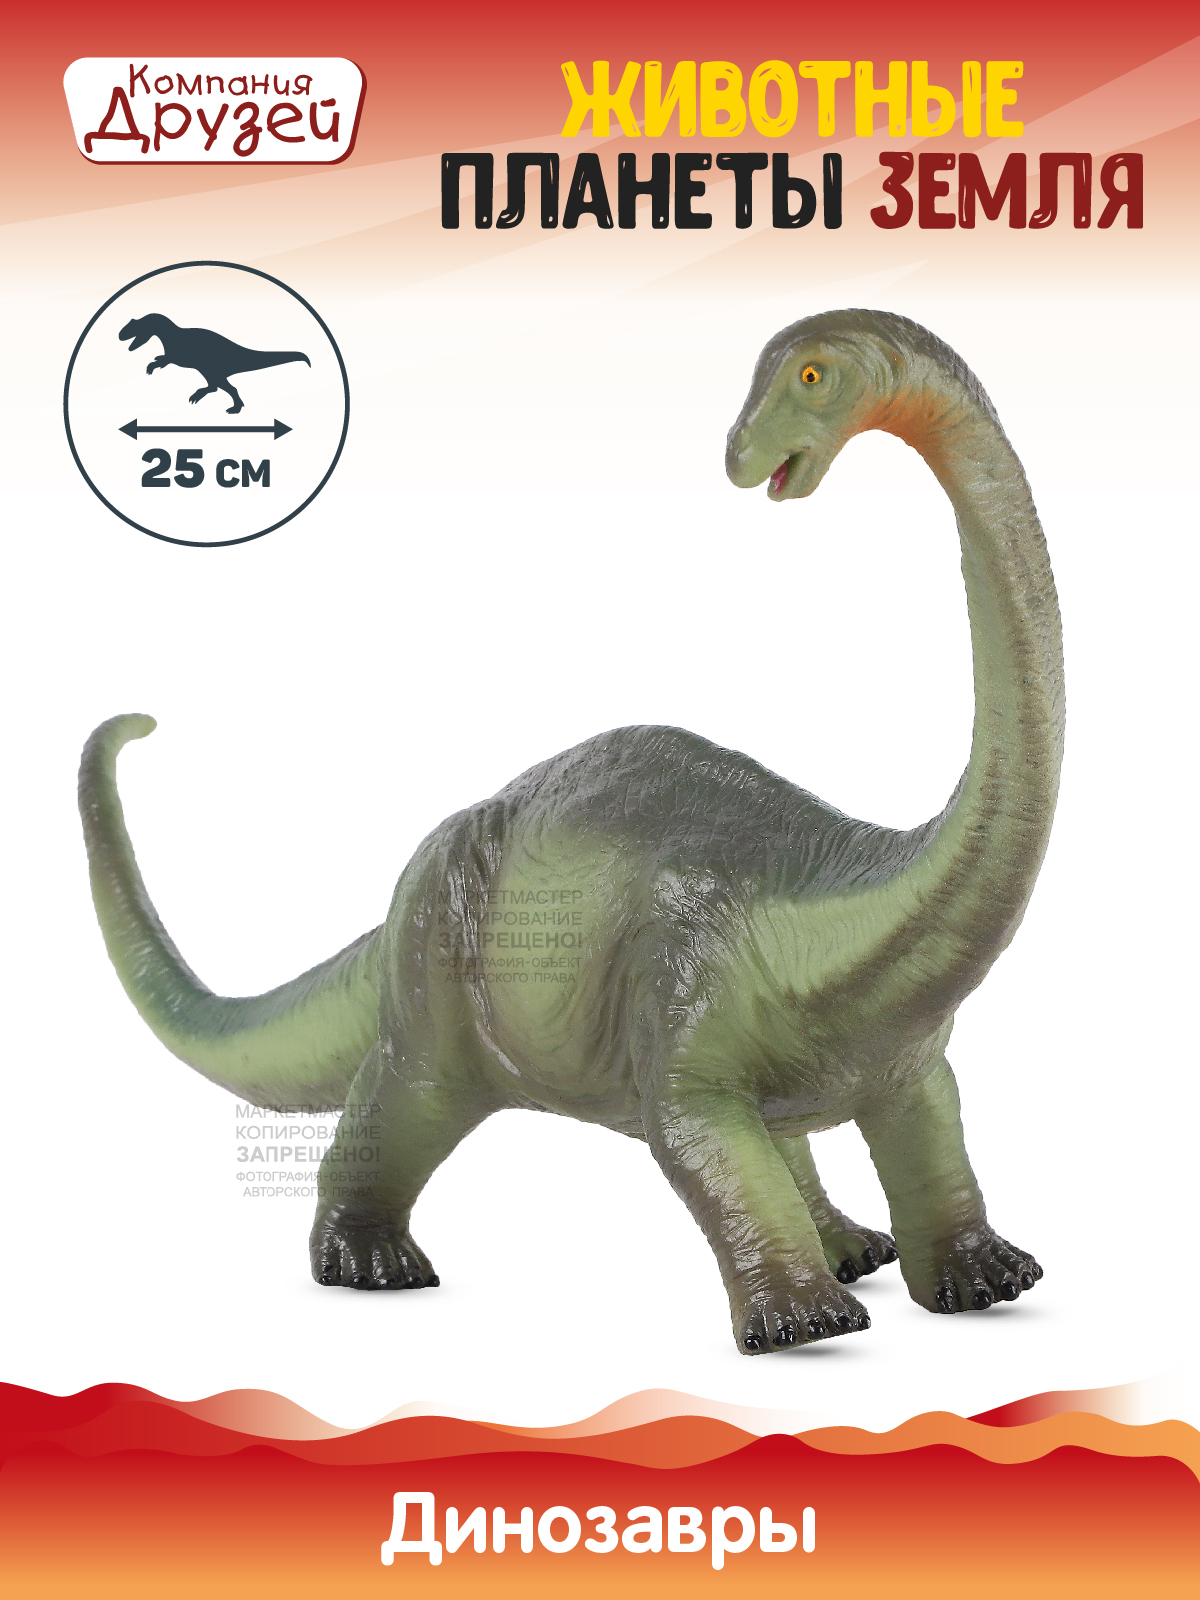 Фигурка Динозавр из серии Животные планеты Земля Компания друзей зеленый JB0208314 динозавр с чипом компания друзей животные планеты земля звук рёв животного jb0207080